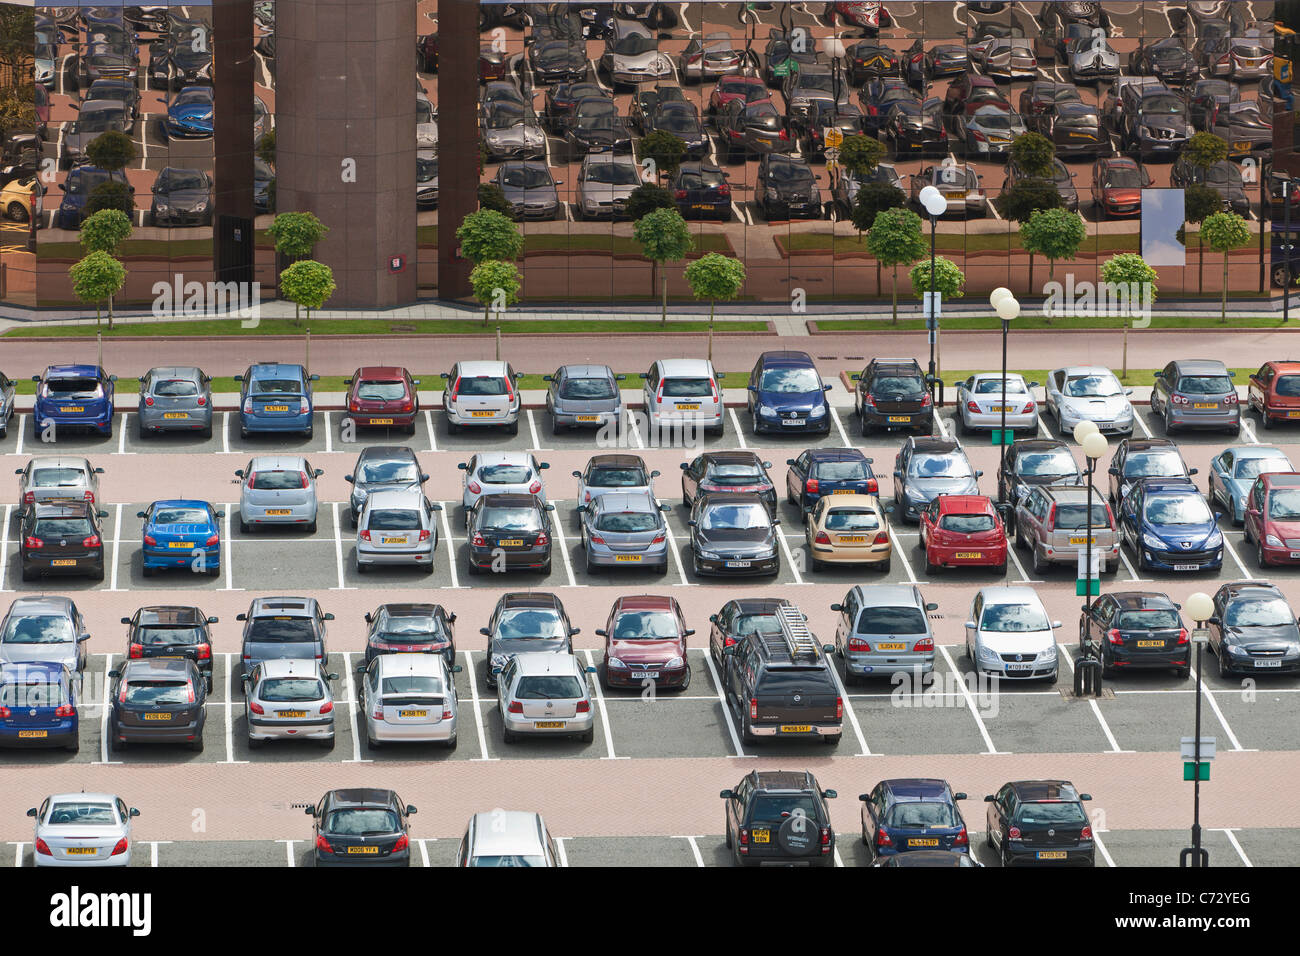 Vista de un aparcamiento público, Inglaterra Foto de stock